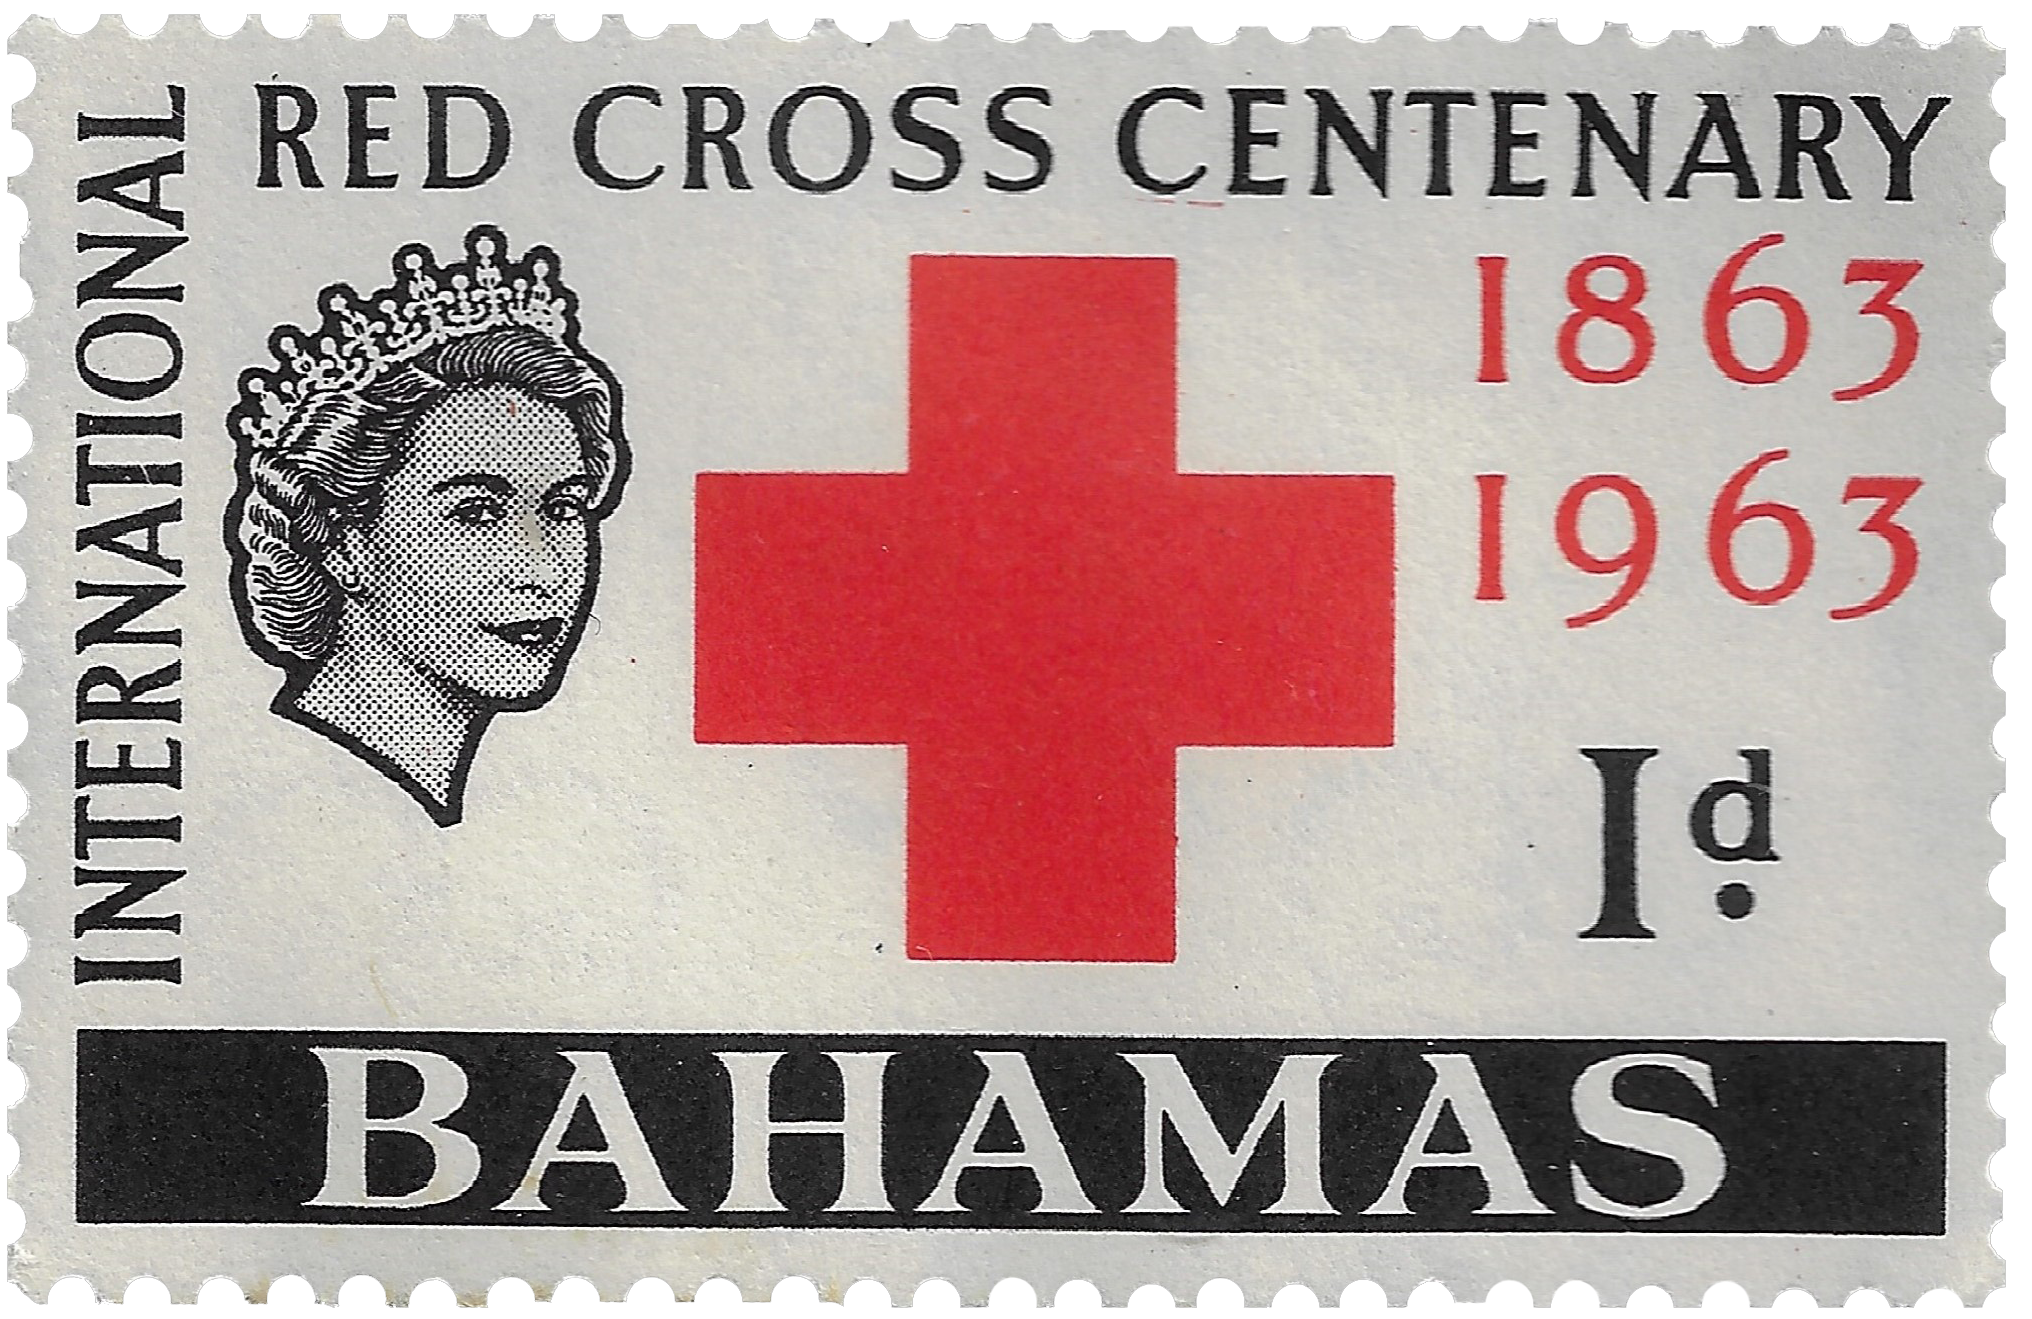 1d 1963, International Red Cross Centenary 1863-1963